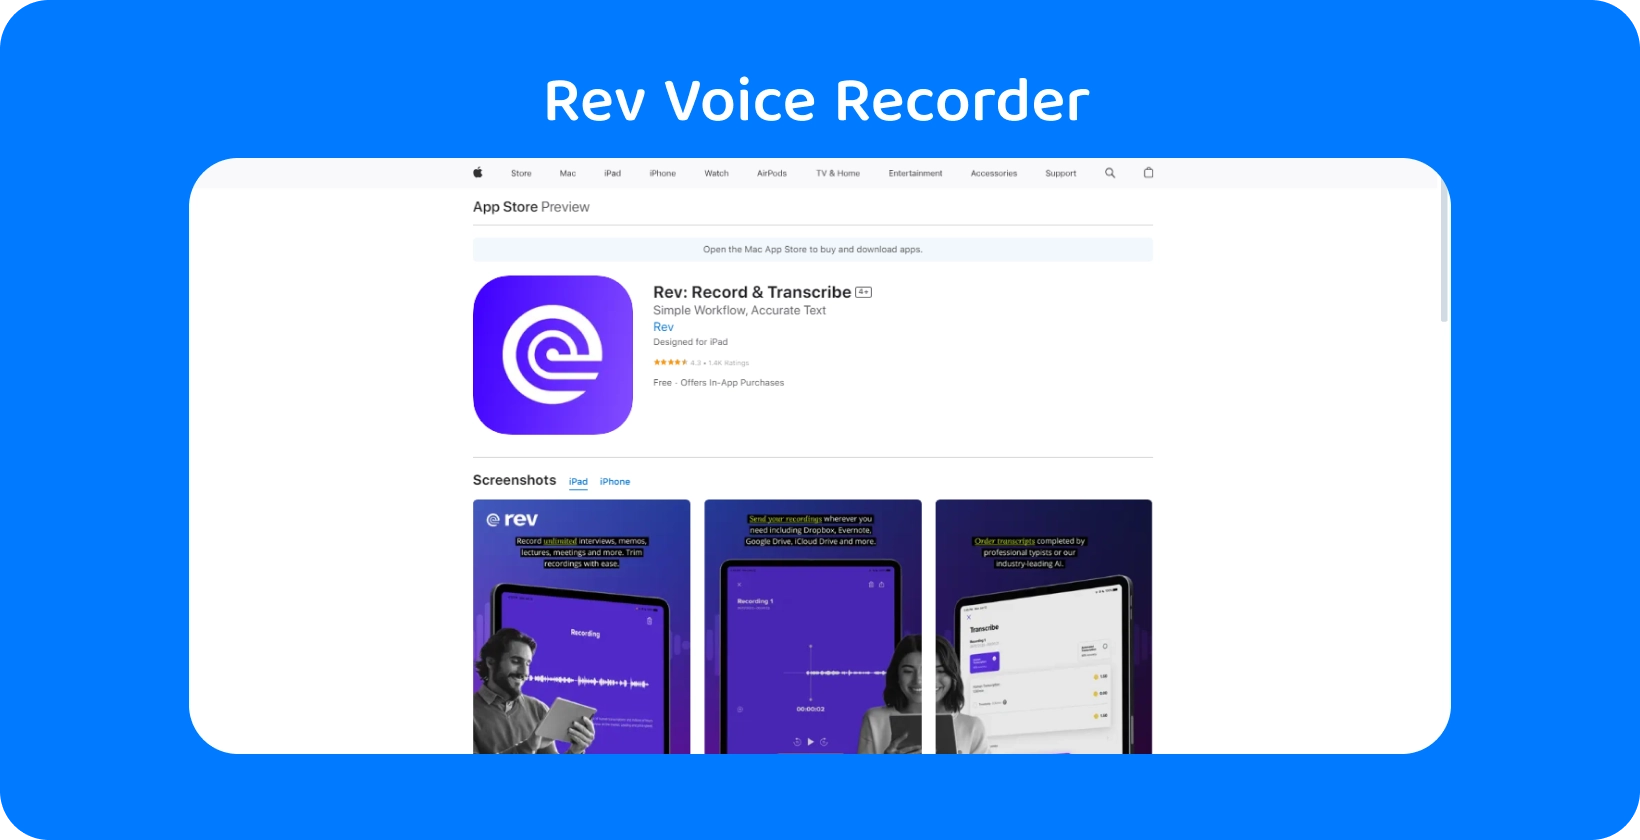 Rev Voice Recorder ऐप Apple App Store में है, जो इसके चिकना डिजाइन और ट्रांसक्रिप्शन सुविधाओं को उजागर करता है।